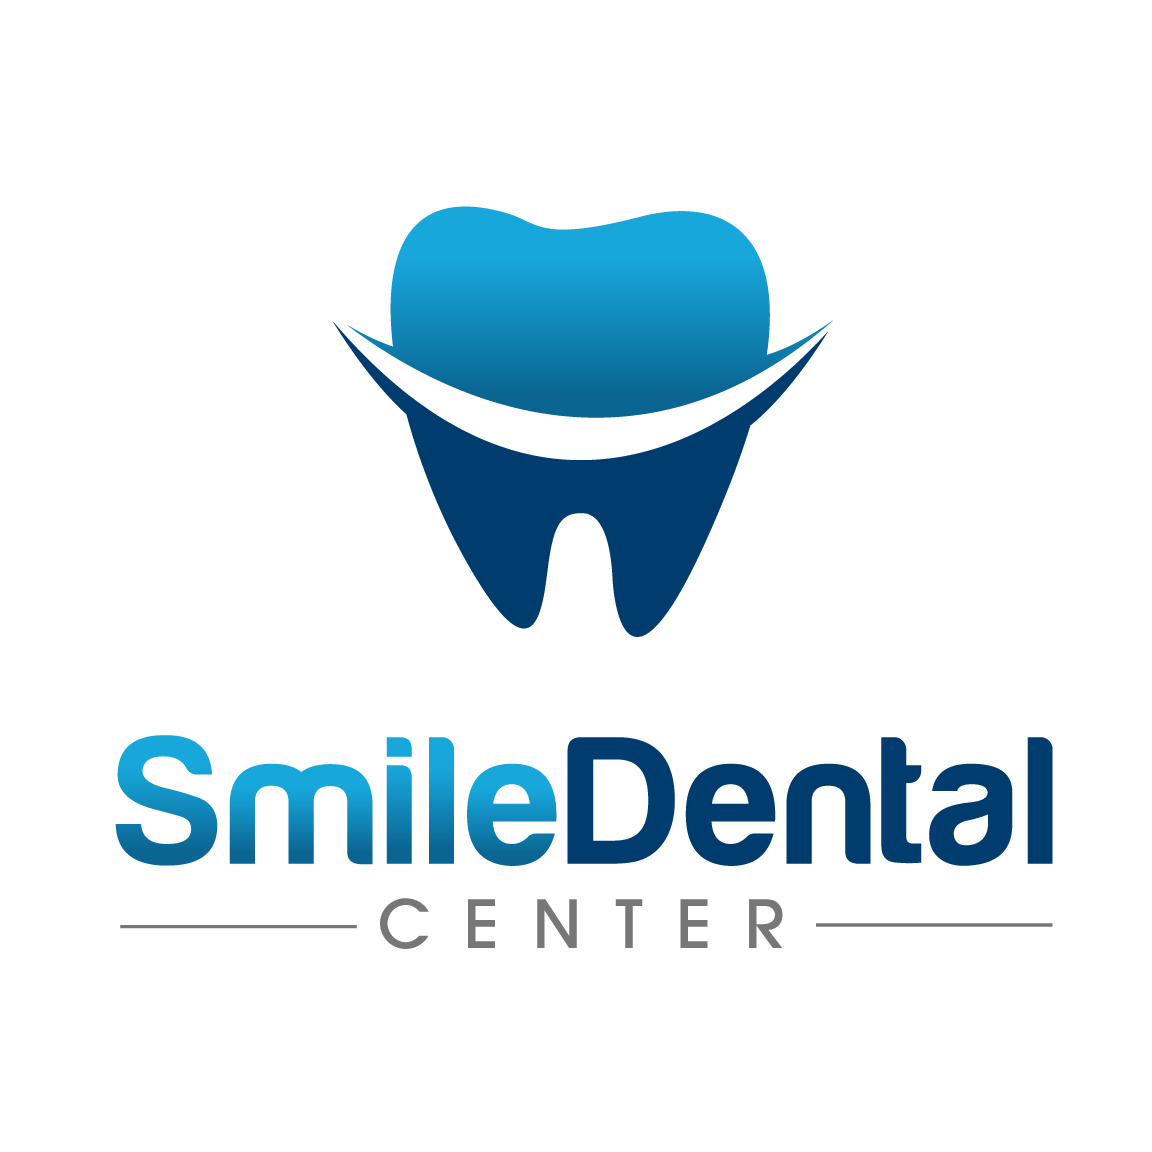 Business logo of Smile Dental Center